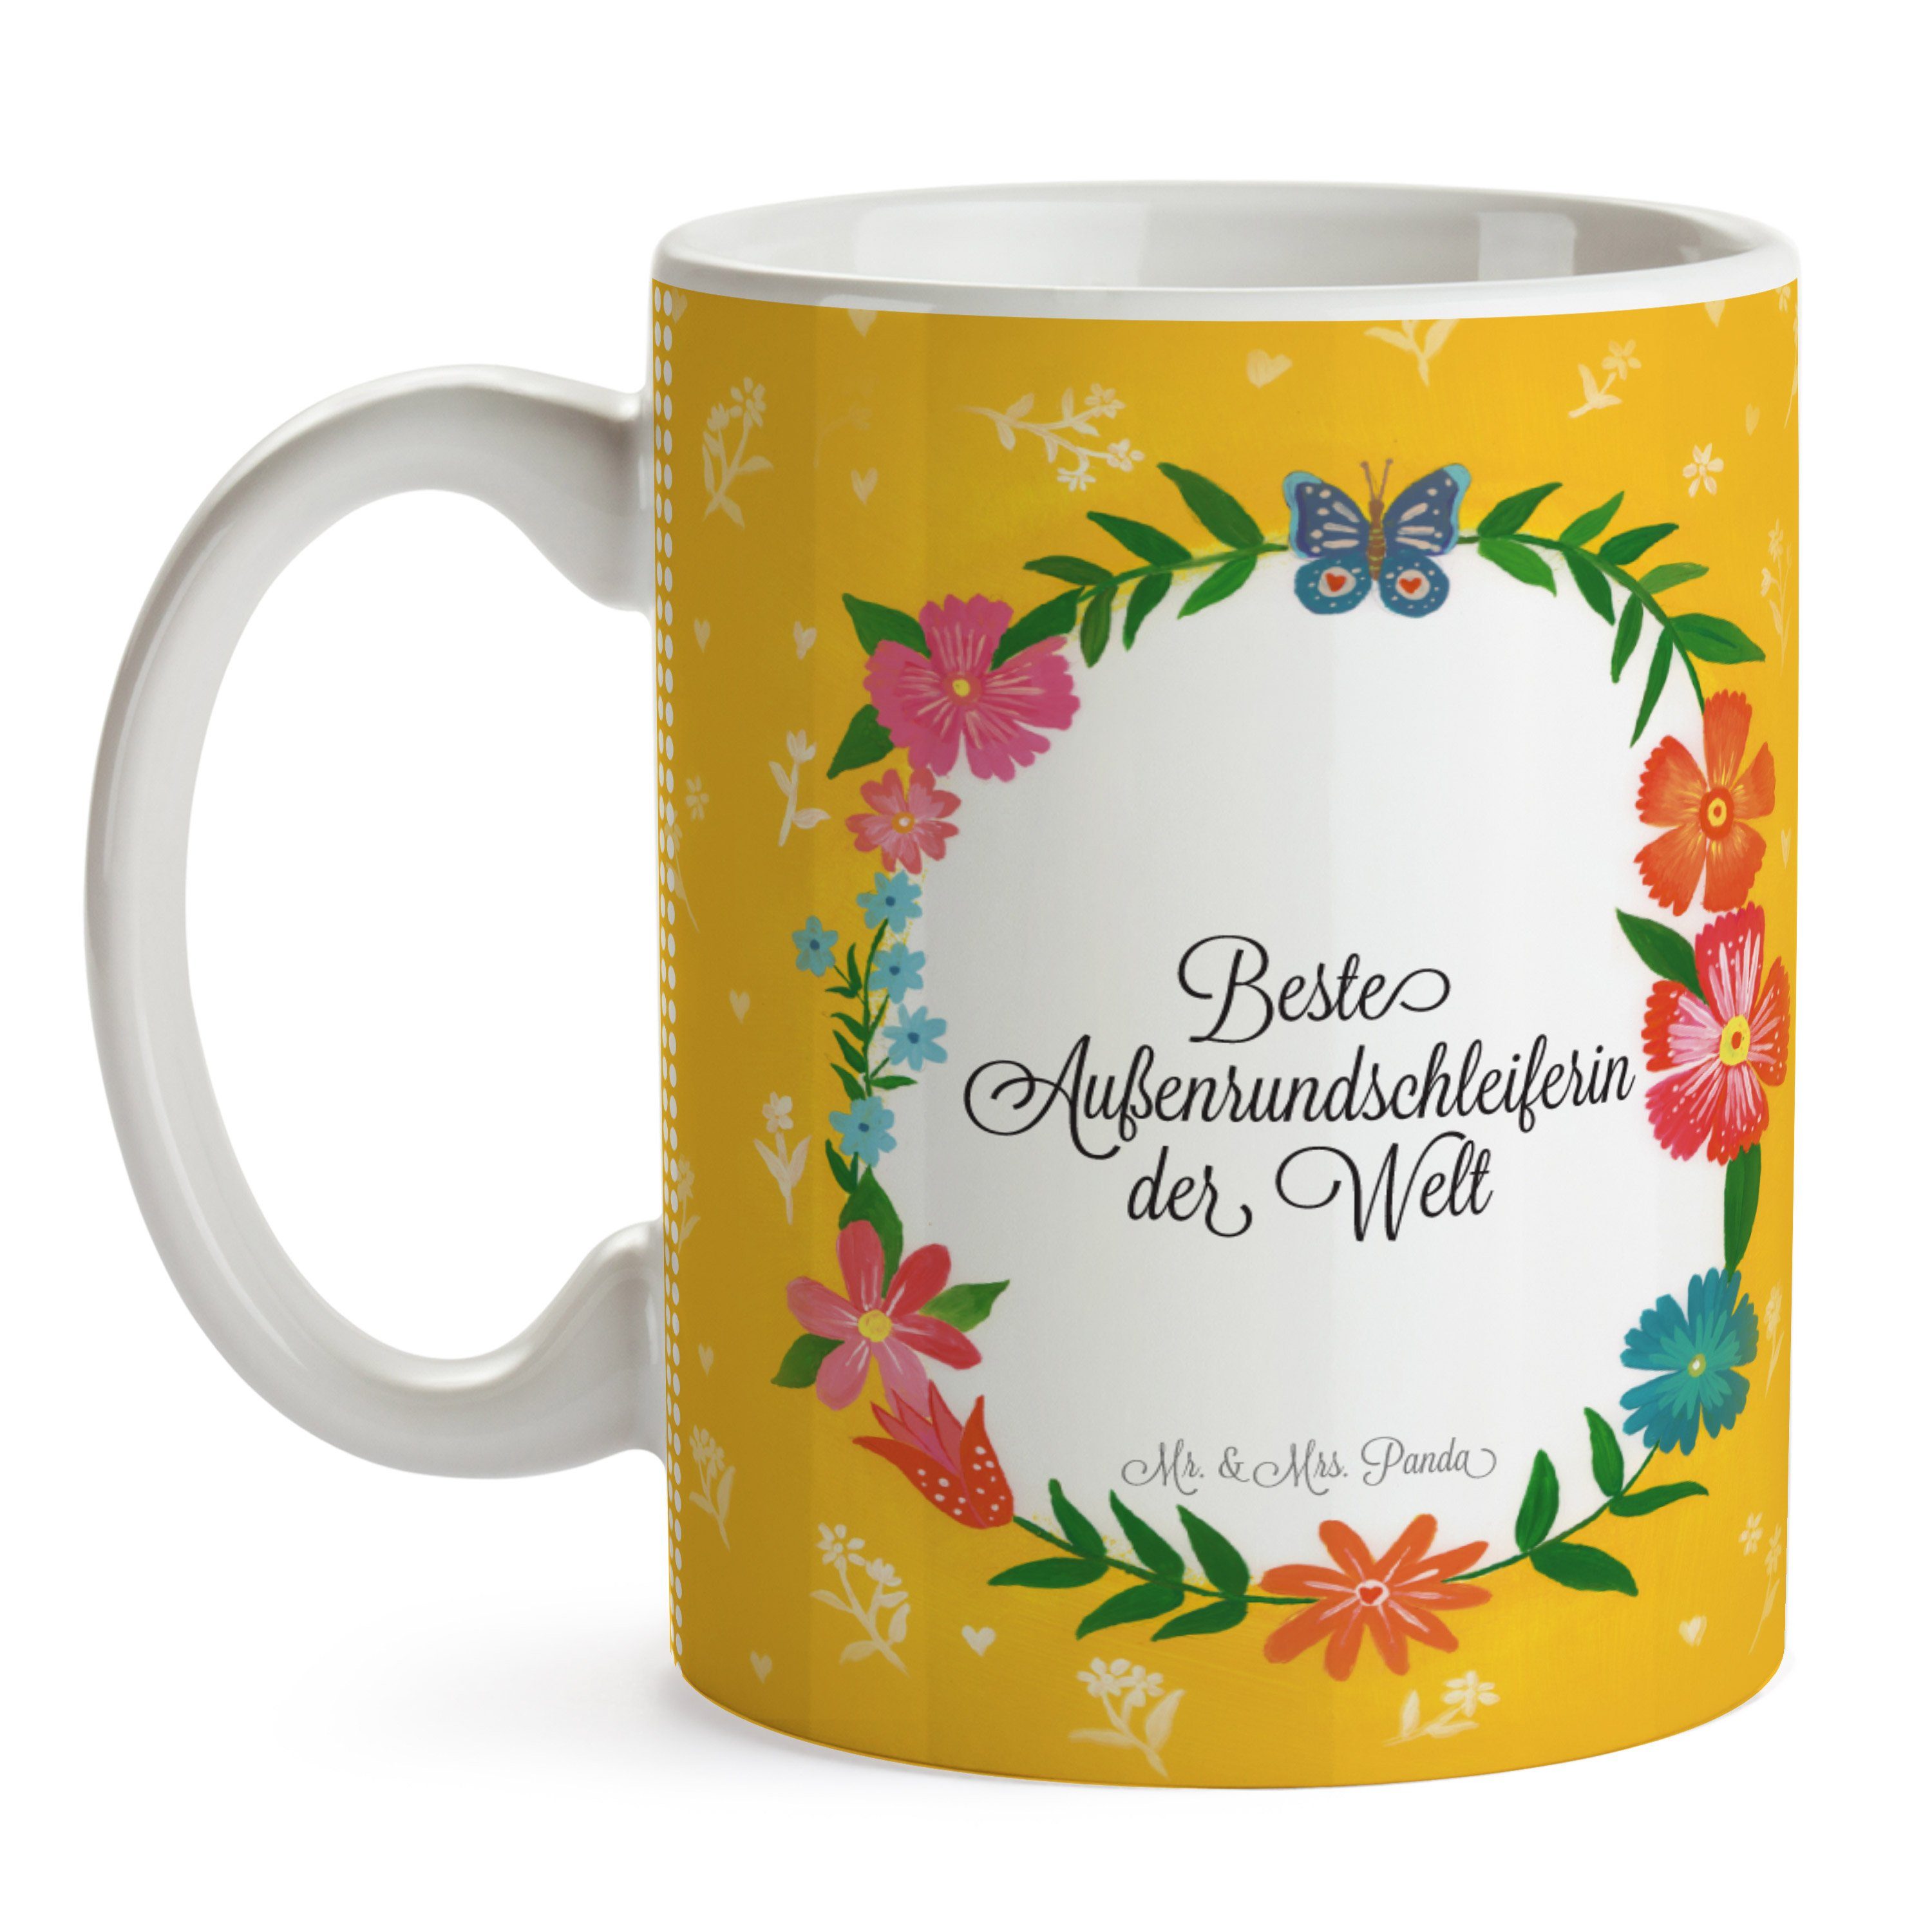 Mr. & Mrs. Panda Tasse Kaffeebecher, Außenrundschleiferin Ausbildung, - Keramik Abschied, Geschenk